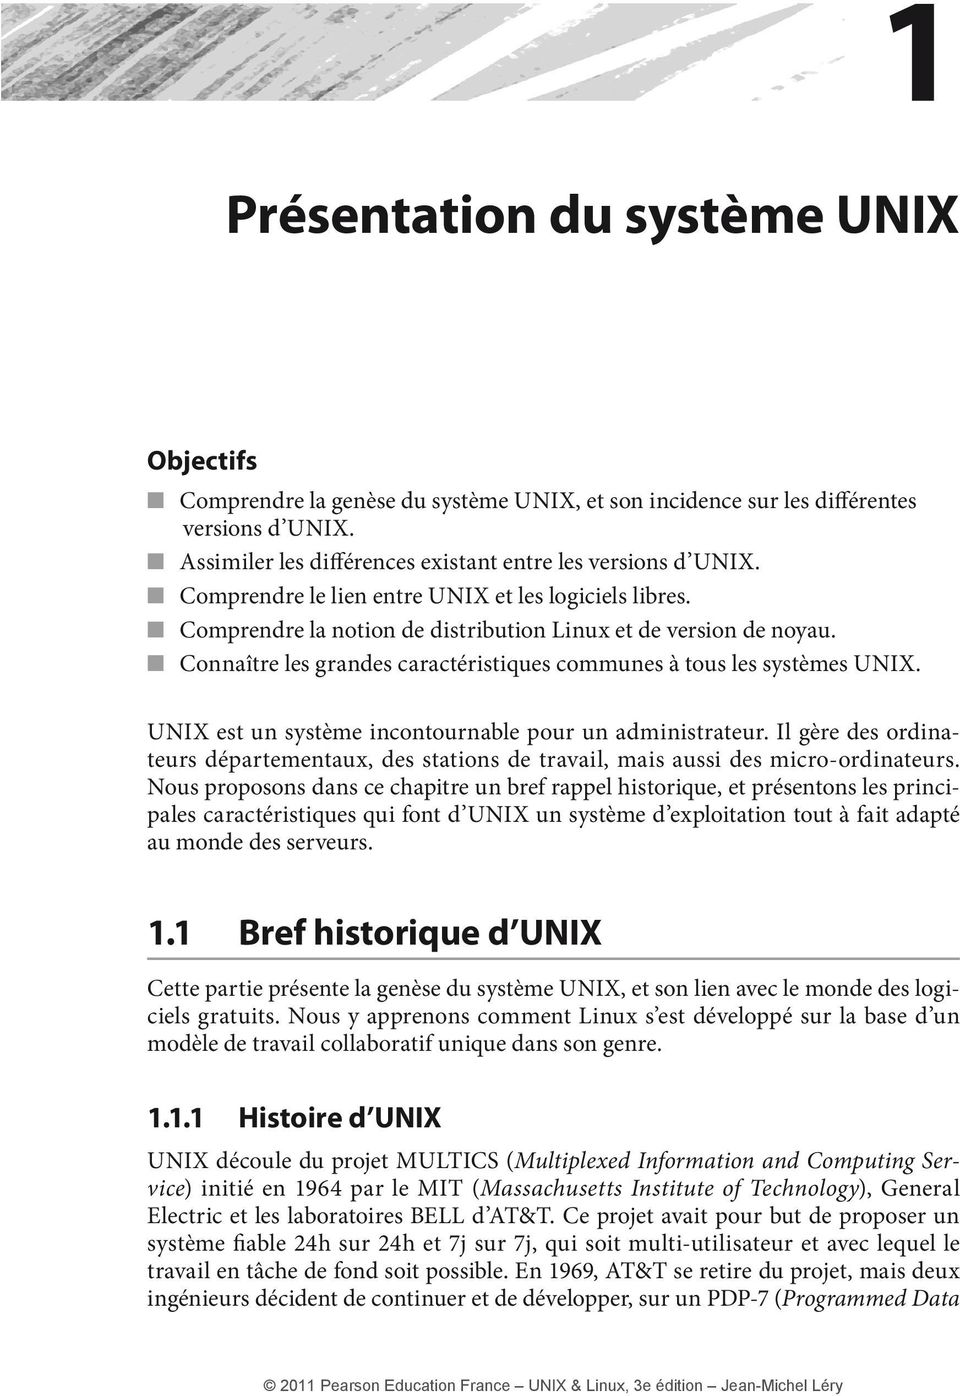 UNIX est un système incontournable pour un administrateur. Il gère des ordinateurs départementaux, des stations de travail, mais aussi des micro-ordinateurs.